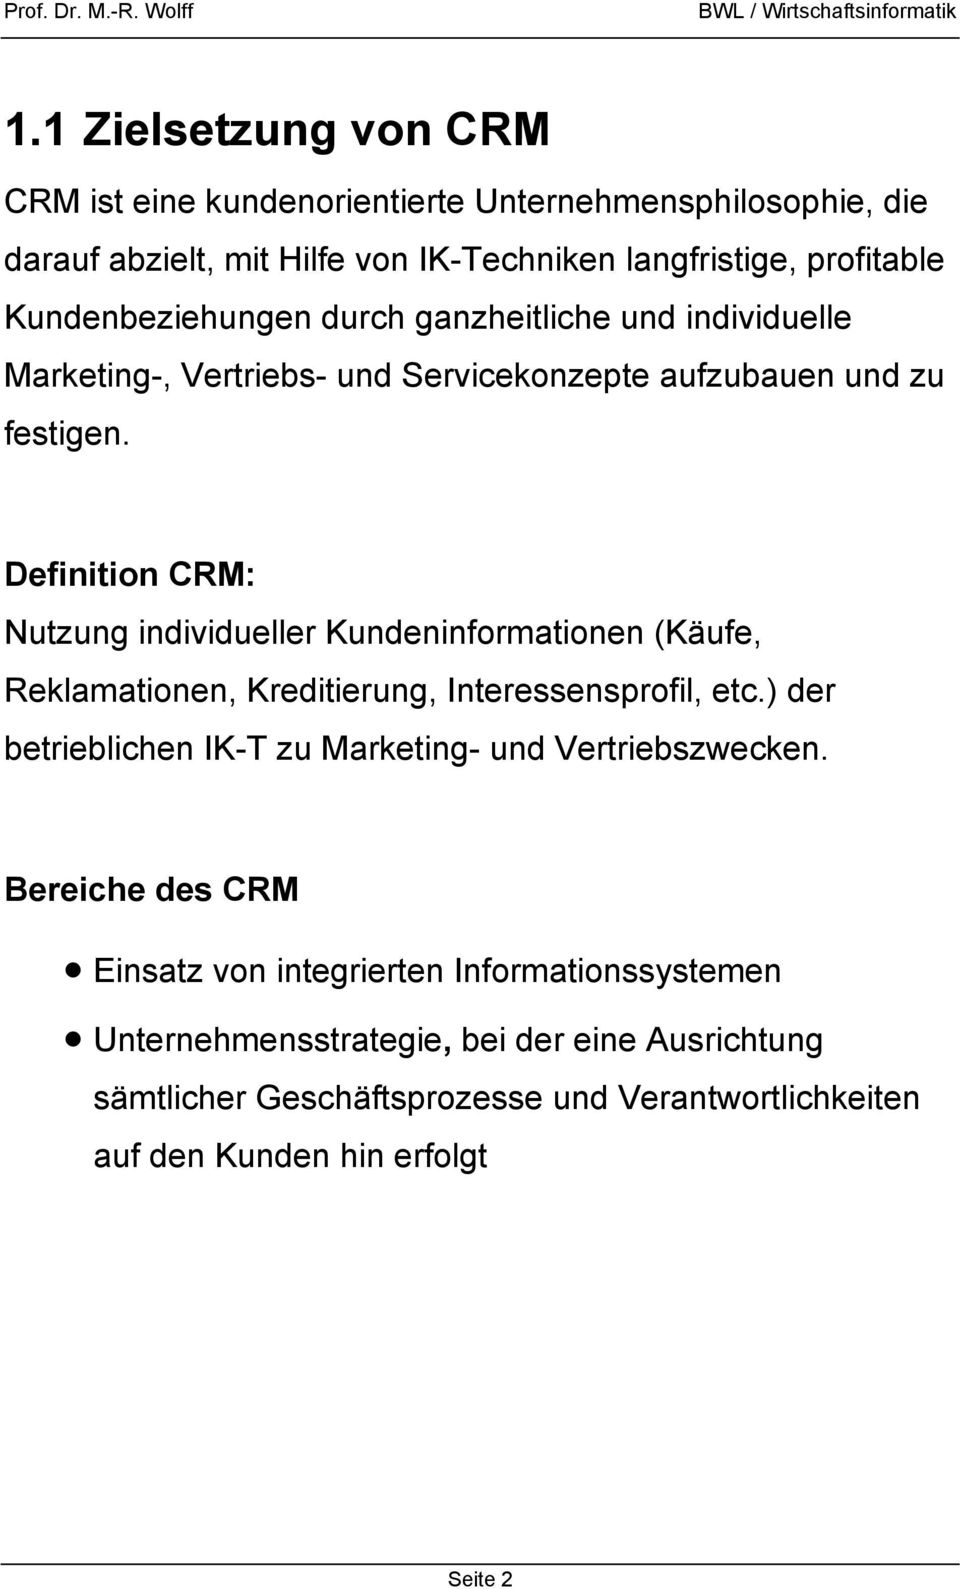 Definition CRM: Nutzung individueller Kundeninformationen (Käufe, Reklamationen, Kreditierung, Interessensprofil, etc.